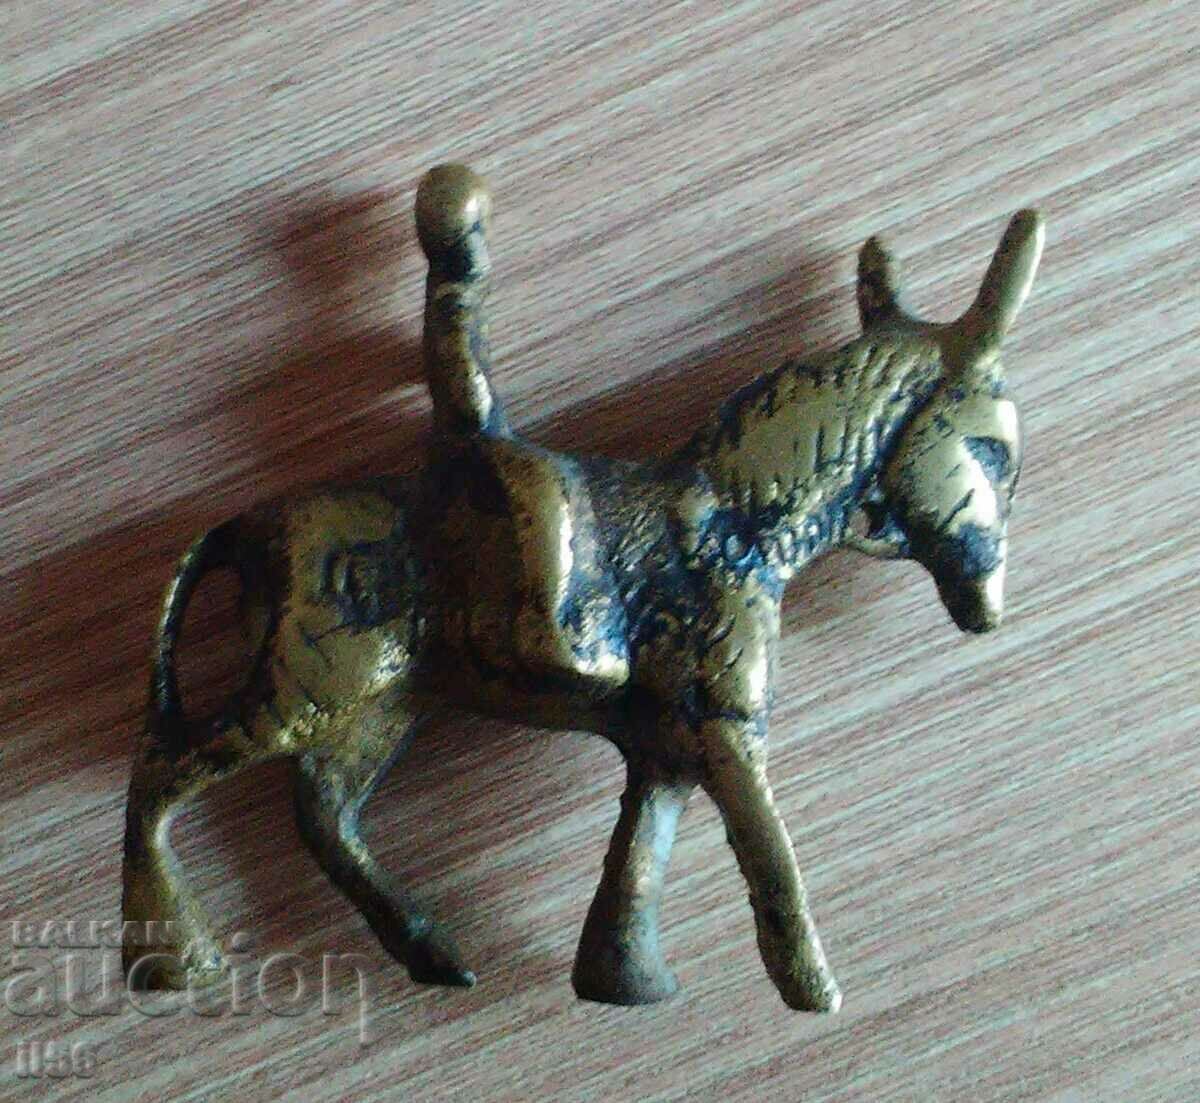 Figură/sculptură/sculptură veche – călăreț de măgar